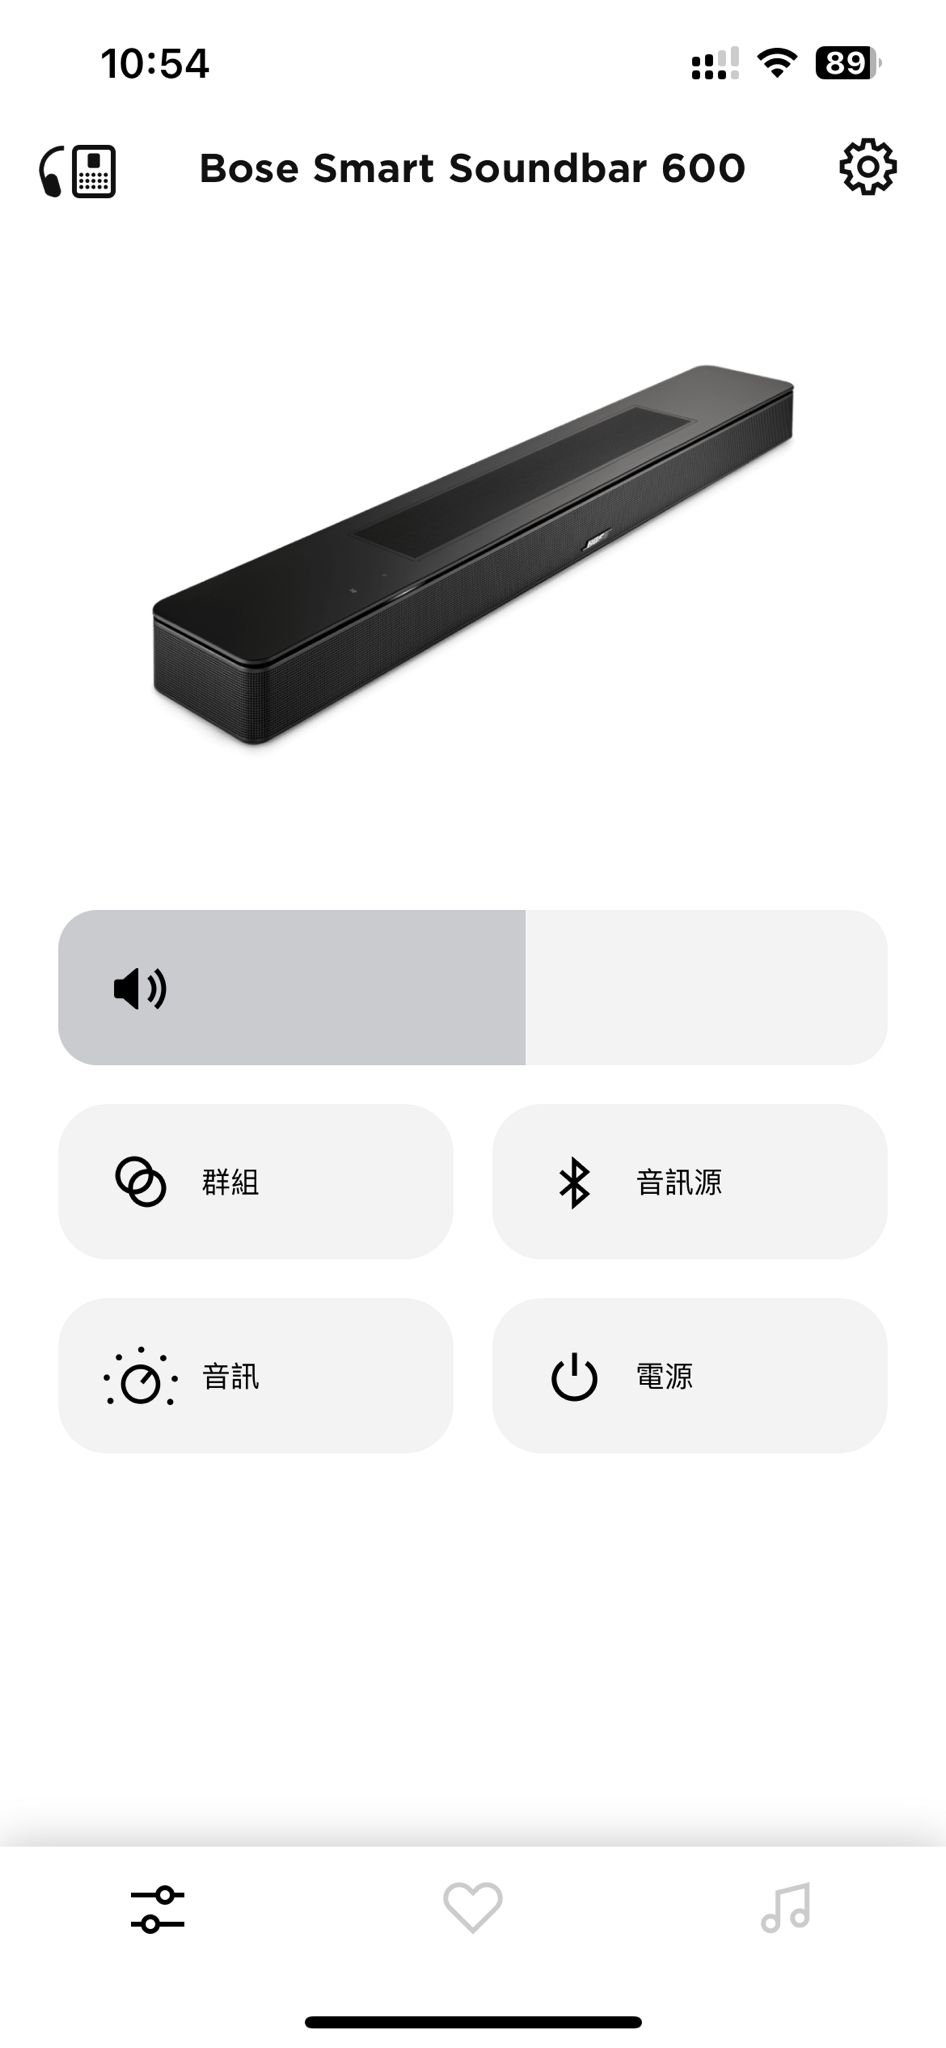 繼之前的高階 Smart Soundbar 900 之後，Bose 最新推出的中階系列 Smart Soundbar 600 也引入了向上發聲單元，可以完整支援 Dolby Atmos 音效。而且配備 TrueSpace 技術，可以將所有播放的內容向上轉換為 3D 聲效輸出，加上一系列豐富的音樂串流功能，$5,000 樓下的價位，相當有吸引力。